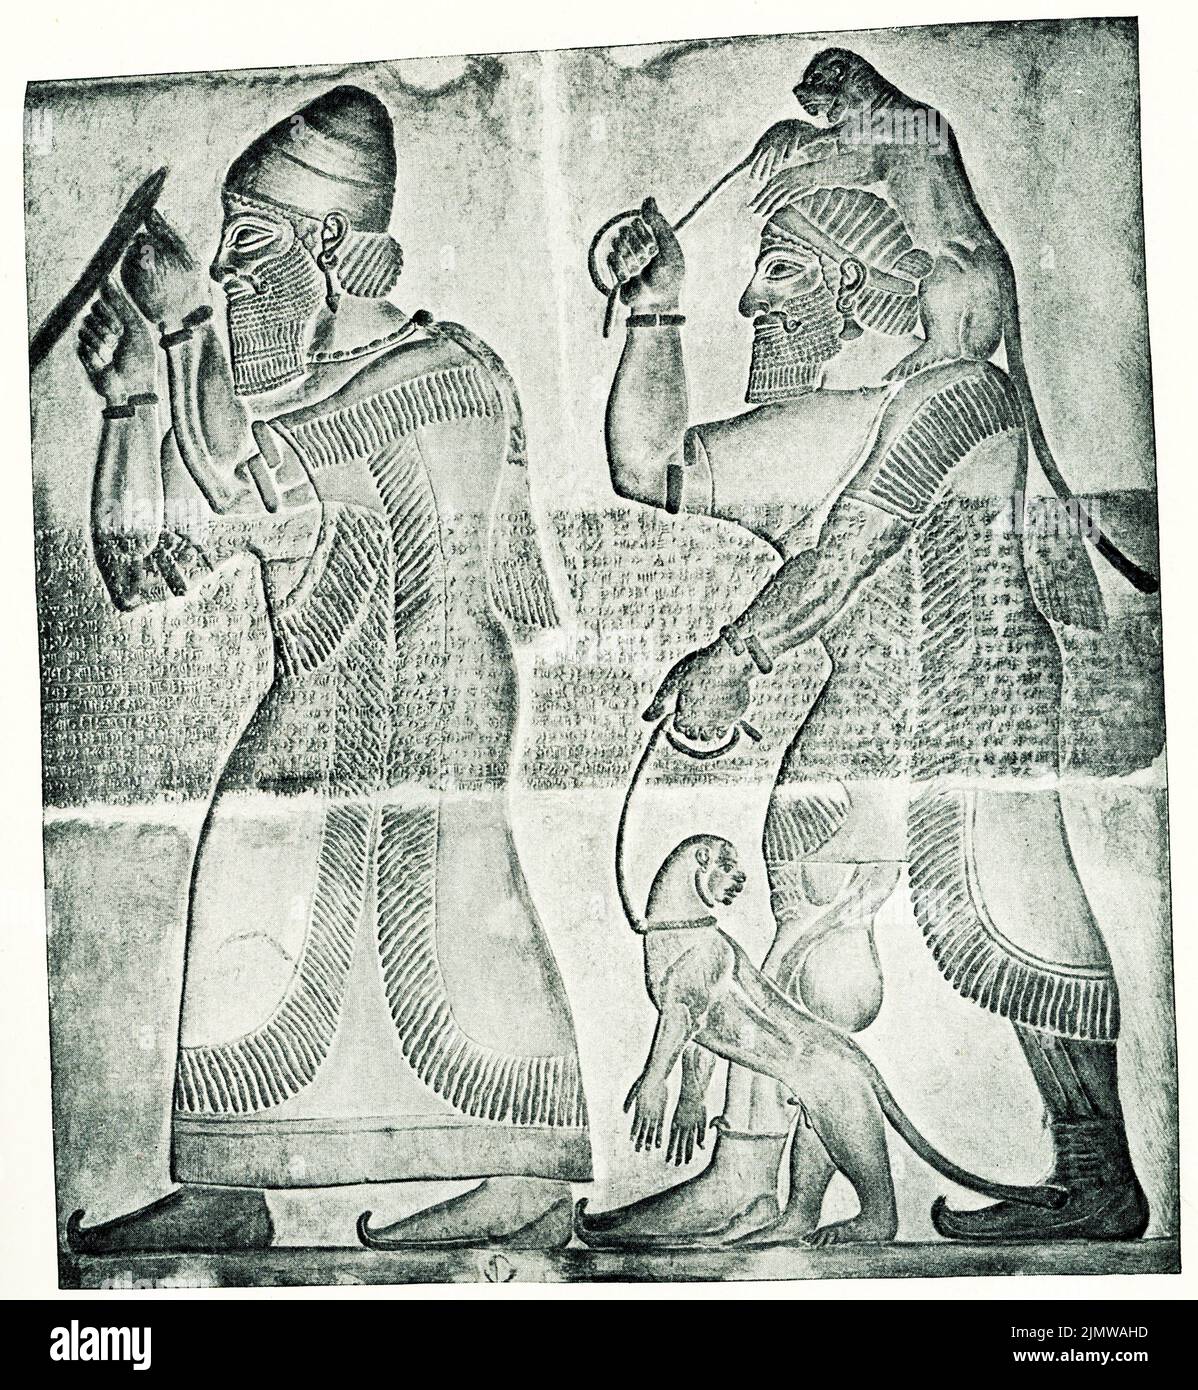 La leyenda de 1910 lee un príncipe de Musri que rinde tributo al rey asirio. El relieve está en el Mritish Museum de Londres. Foto de stock